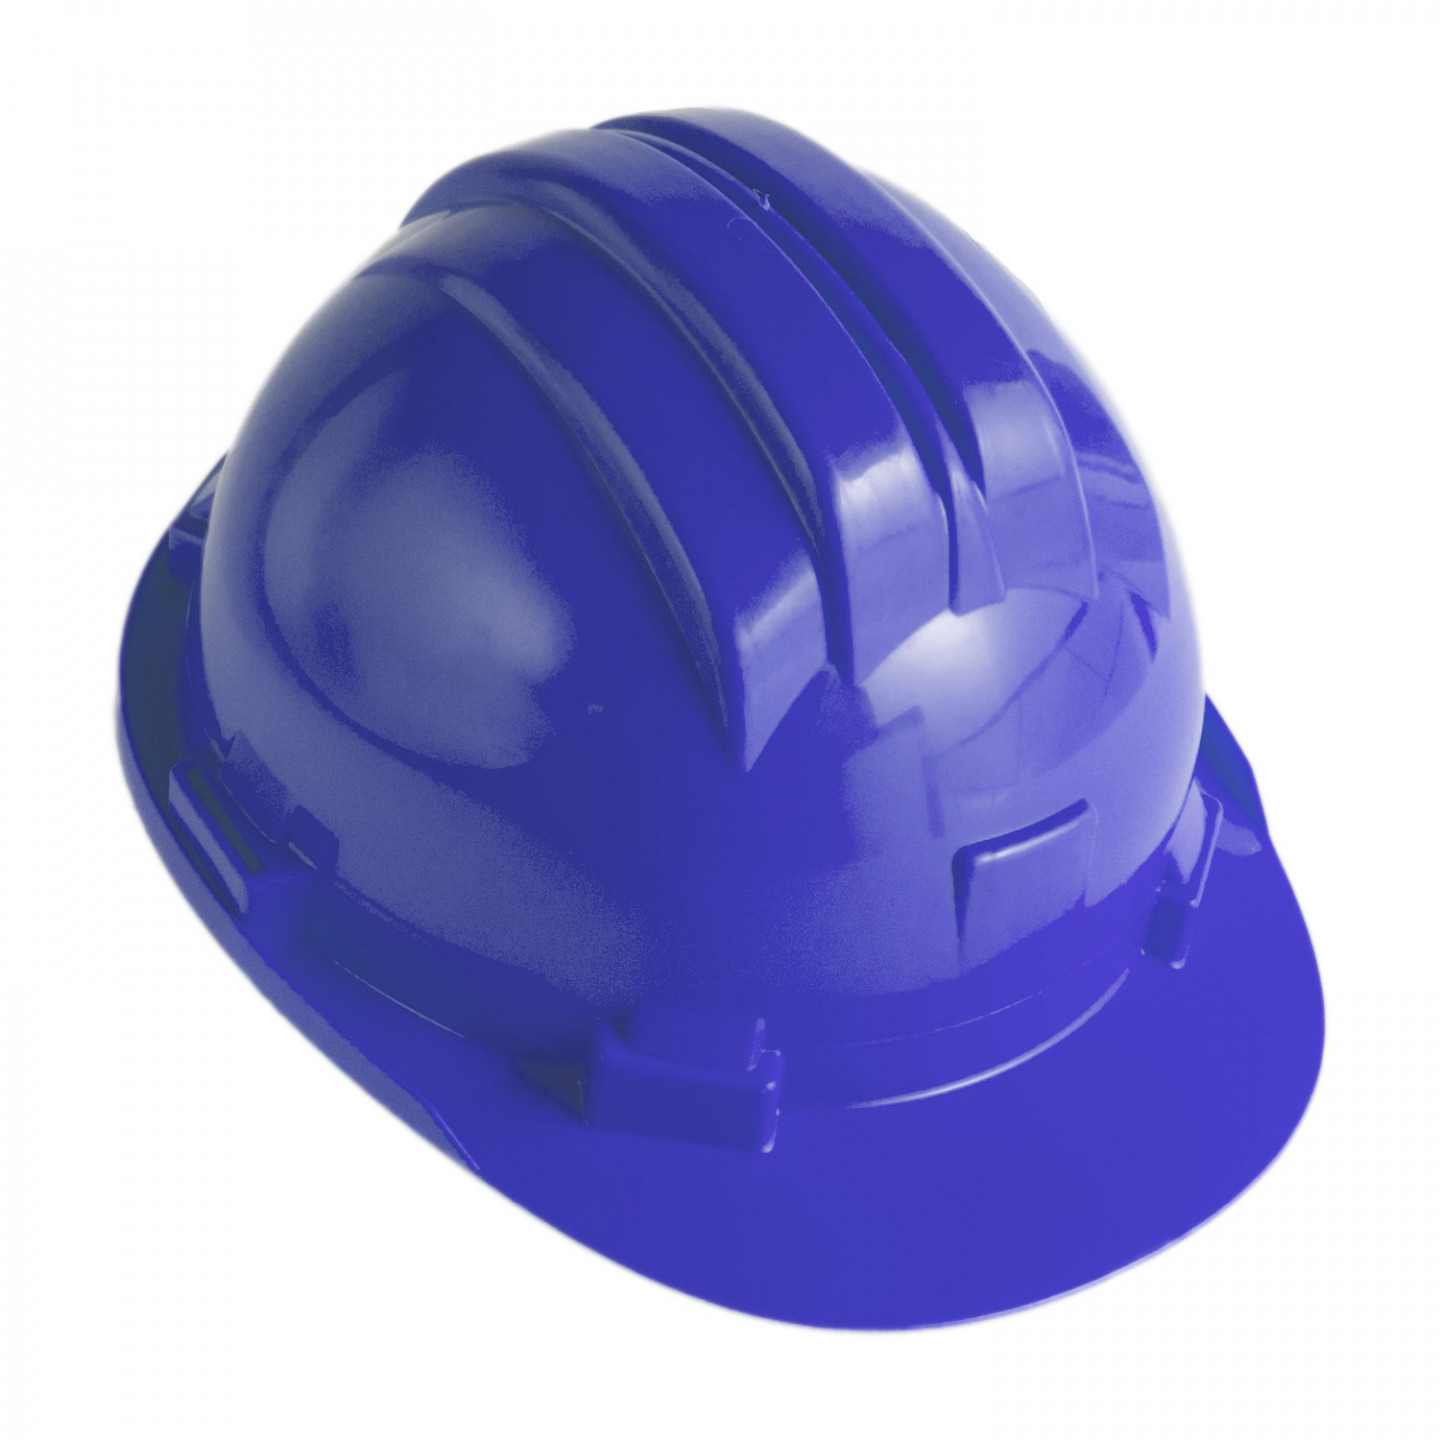 Elmetto da lavoro casco di protezione della testa senza frangisudore blu